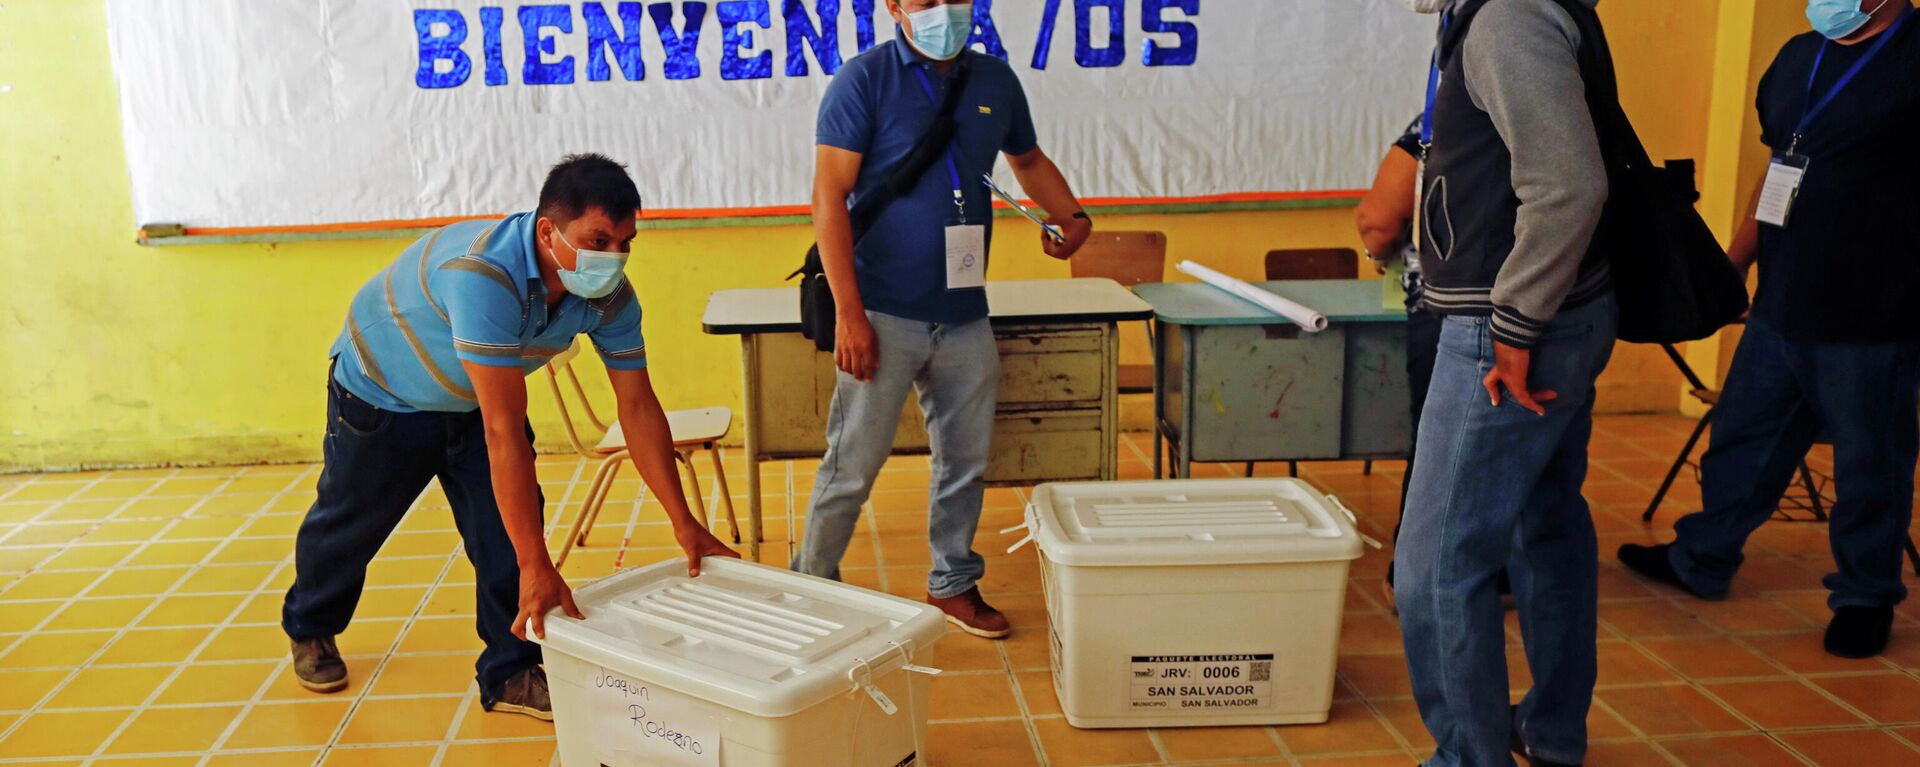 Preparación para las elecciones en El Salvador - Sputnik Mundo, 1920, 28.02.2021